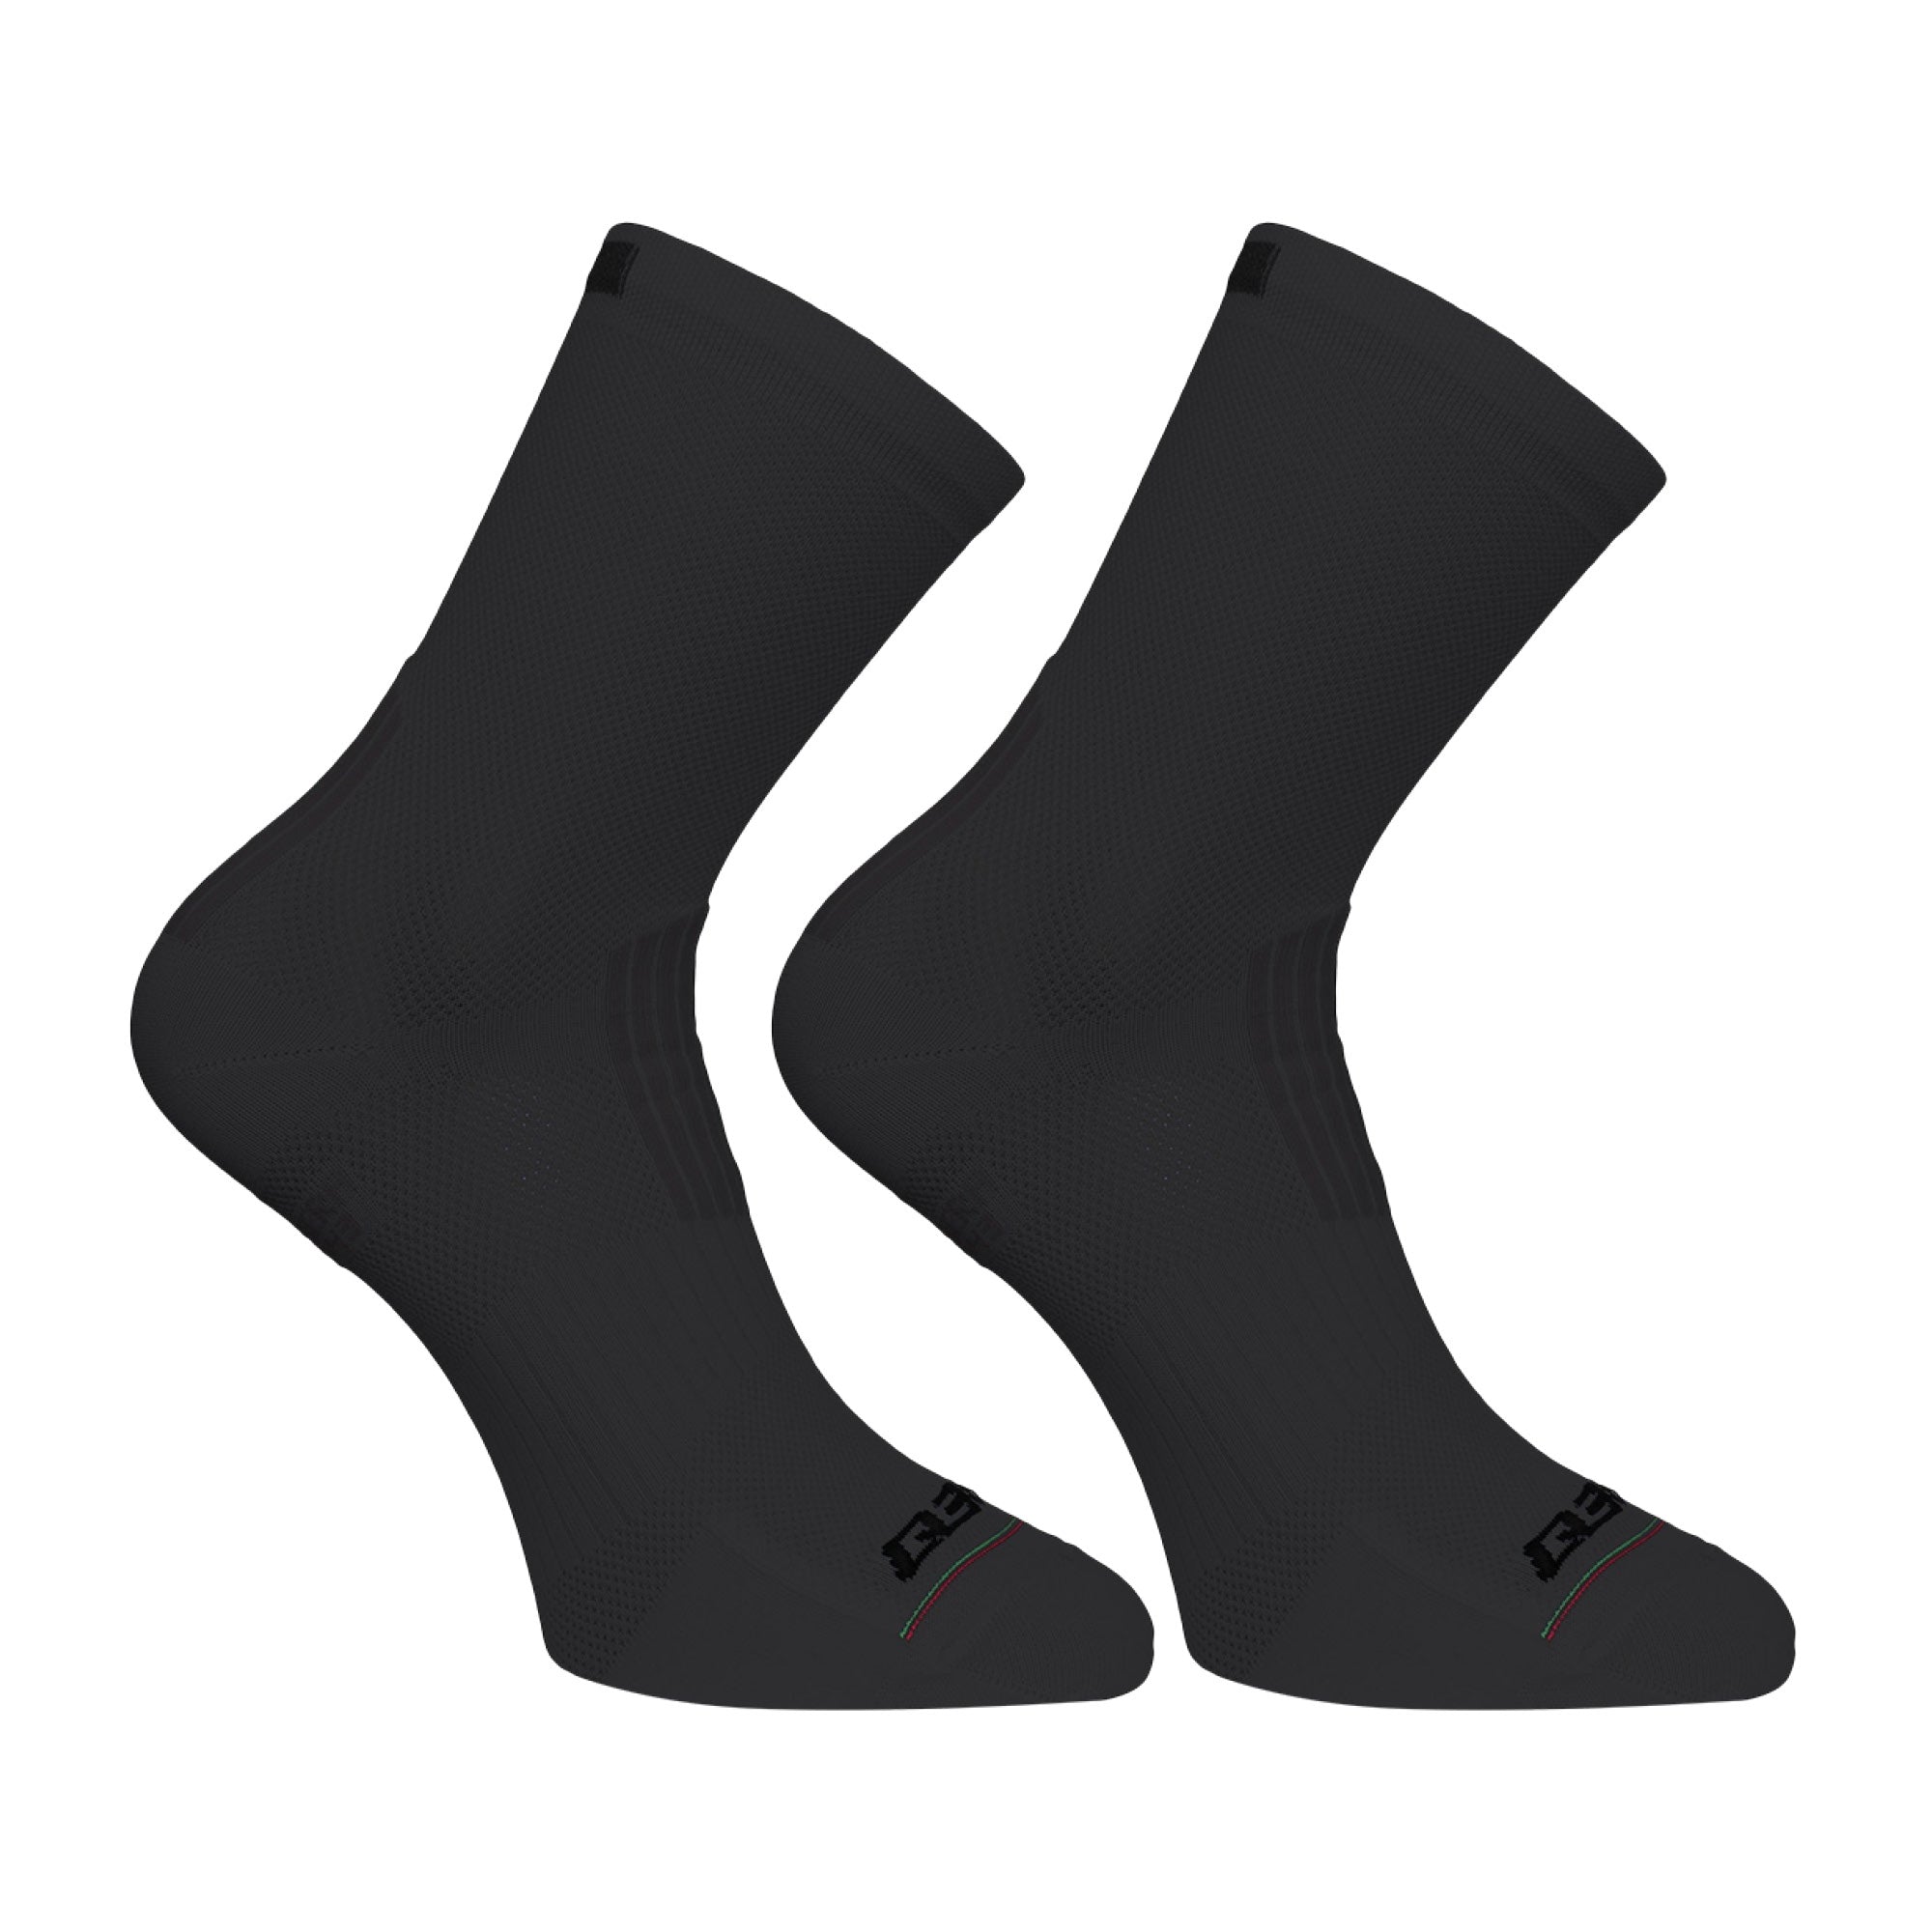 Super Leggera Socks (2 Pairs)